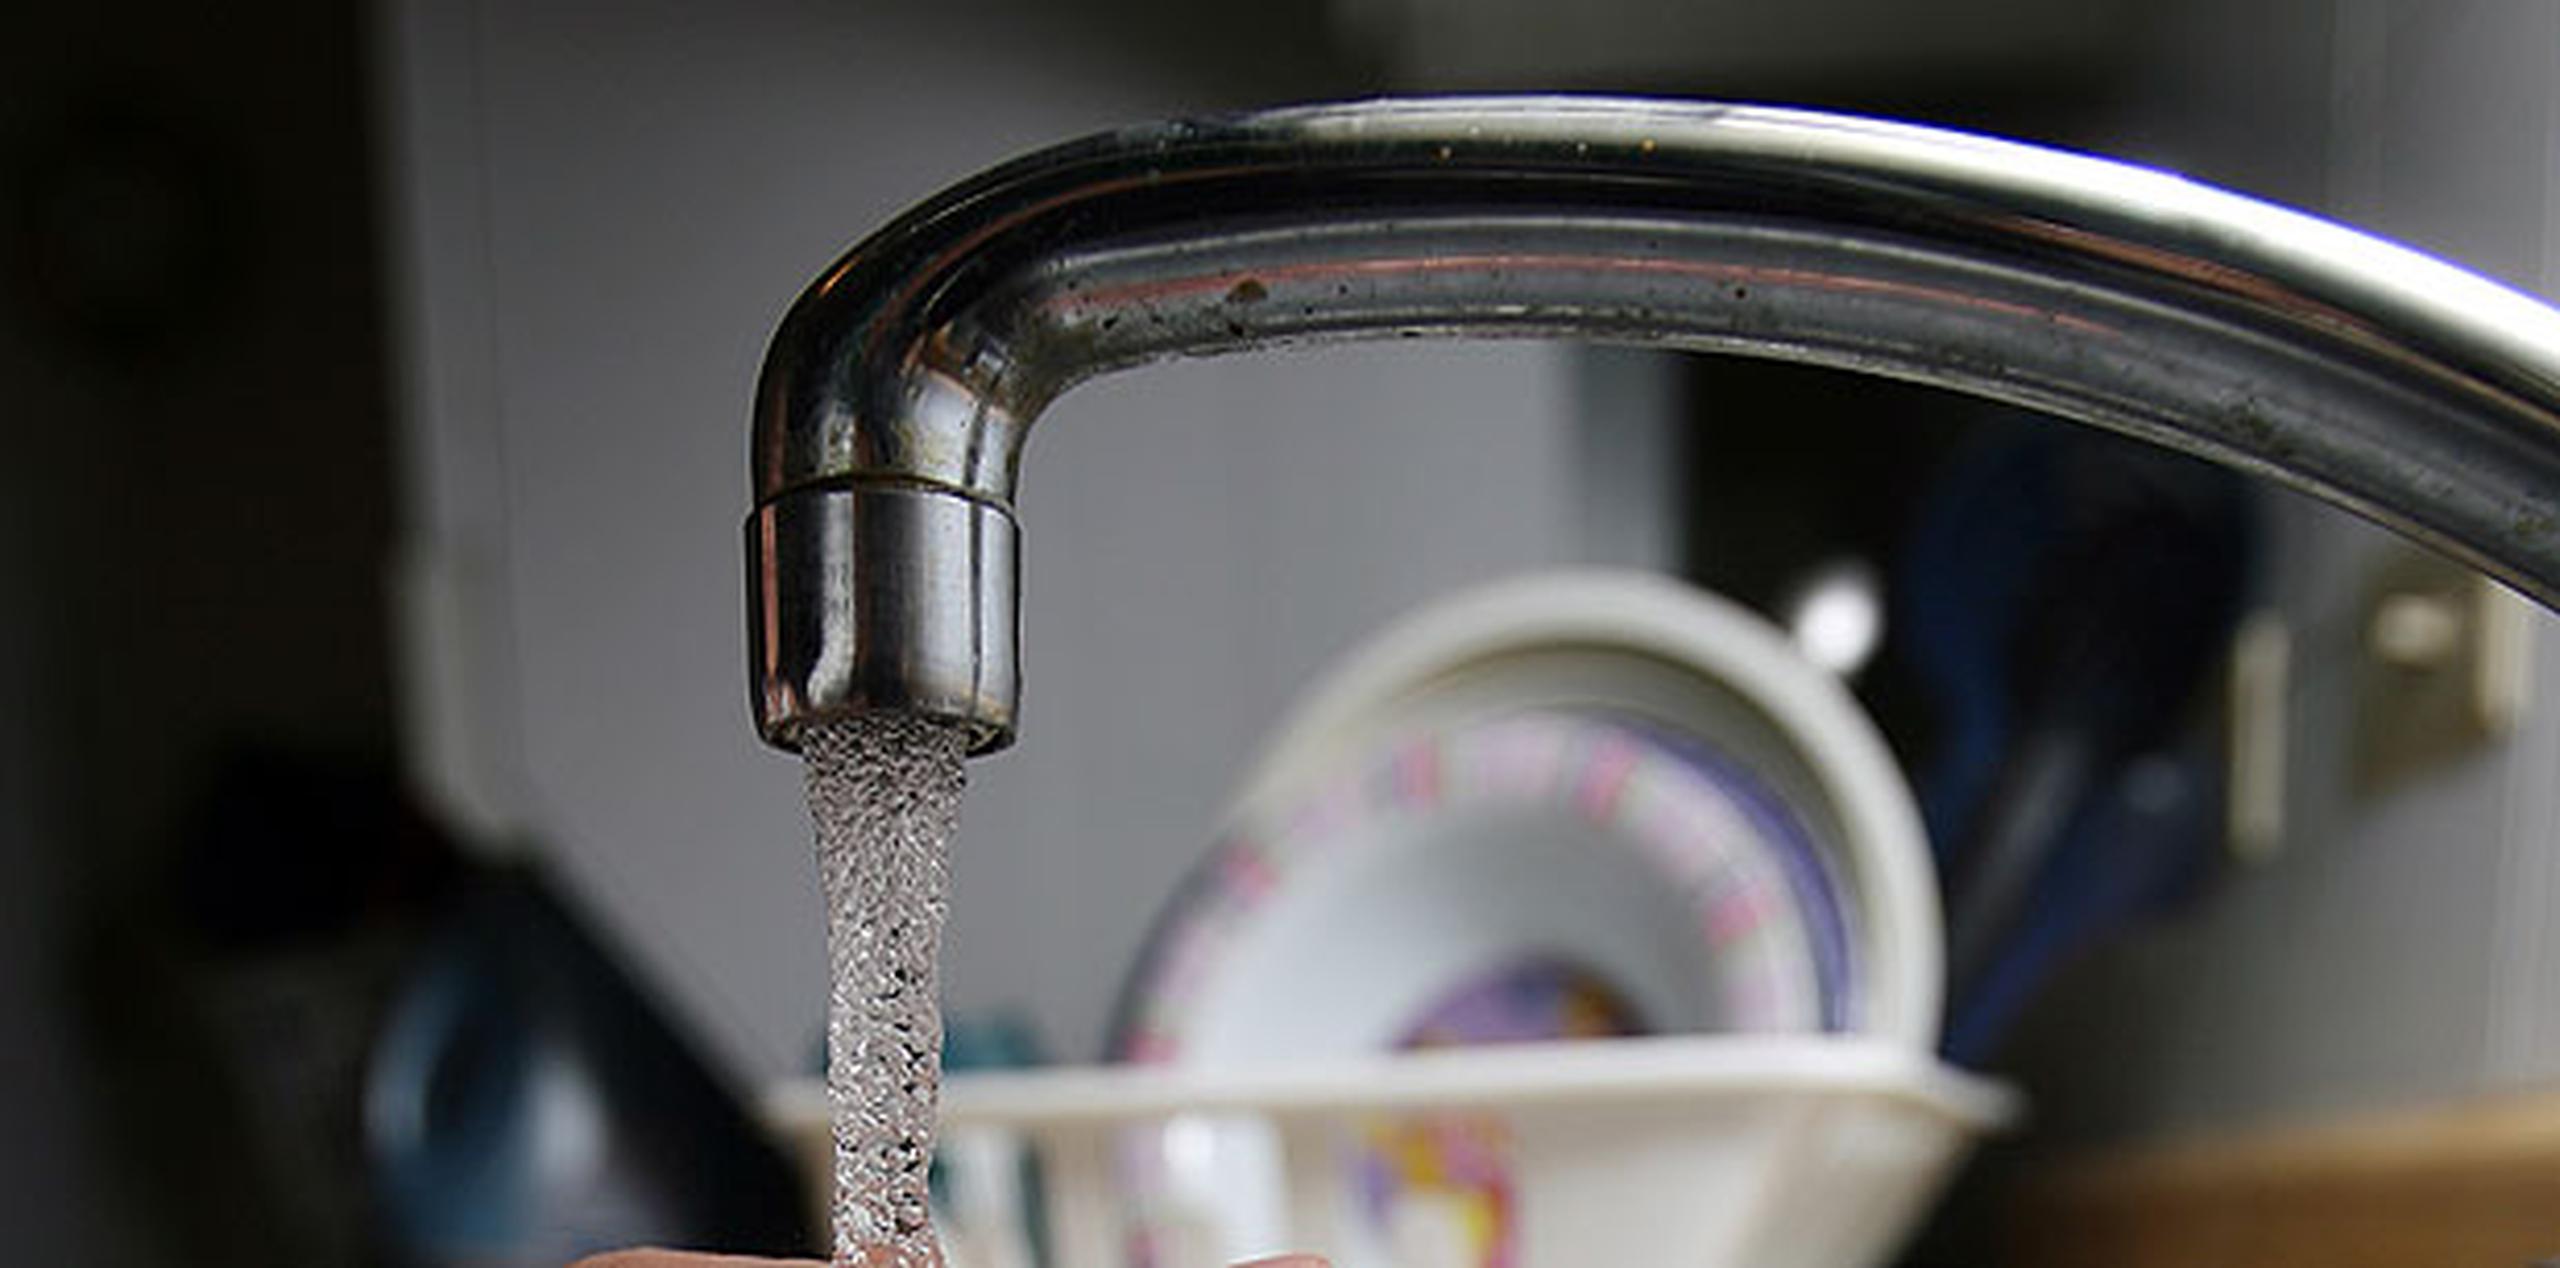 Se recomienda que una vez se restablezca el servicio, hervir el agua por cinco minutos antes del consumo humano. (Archivo)